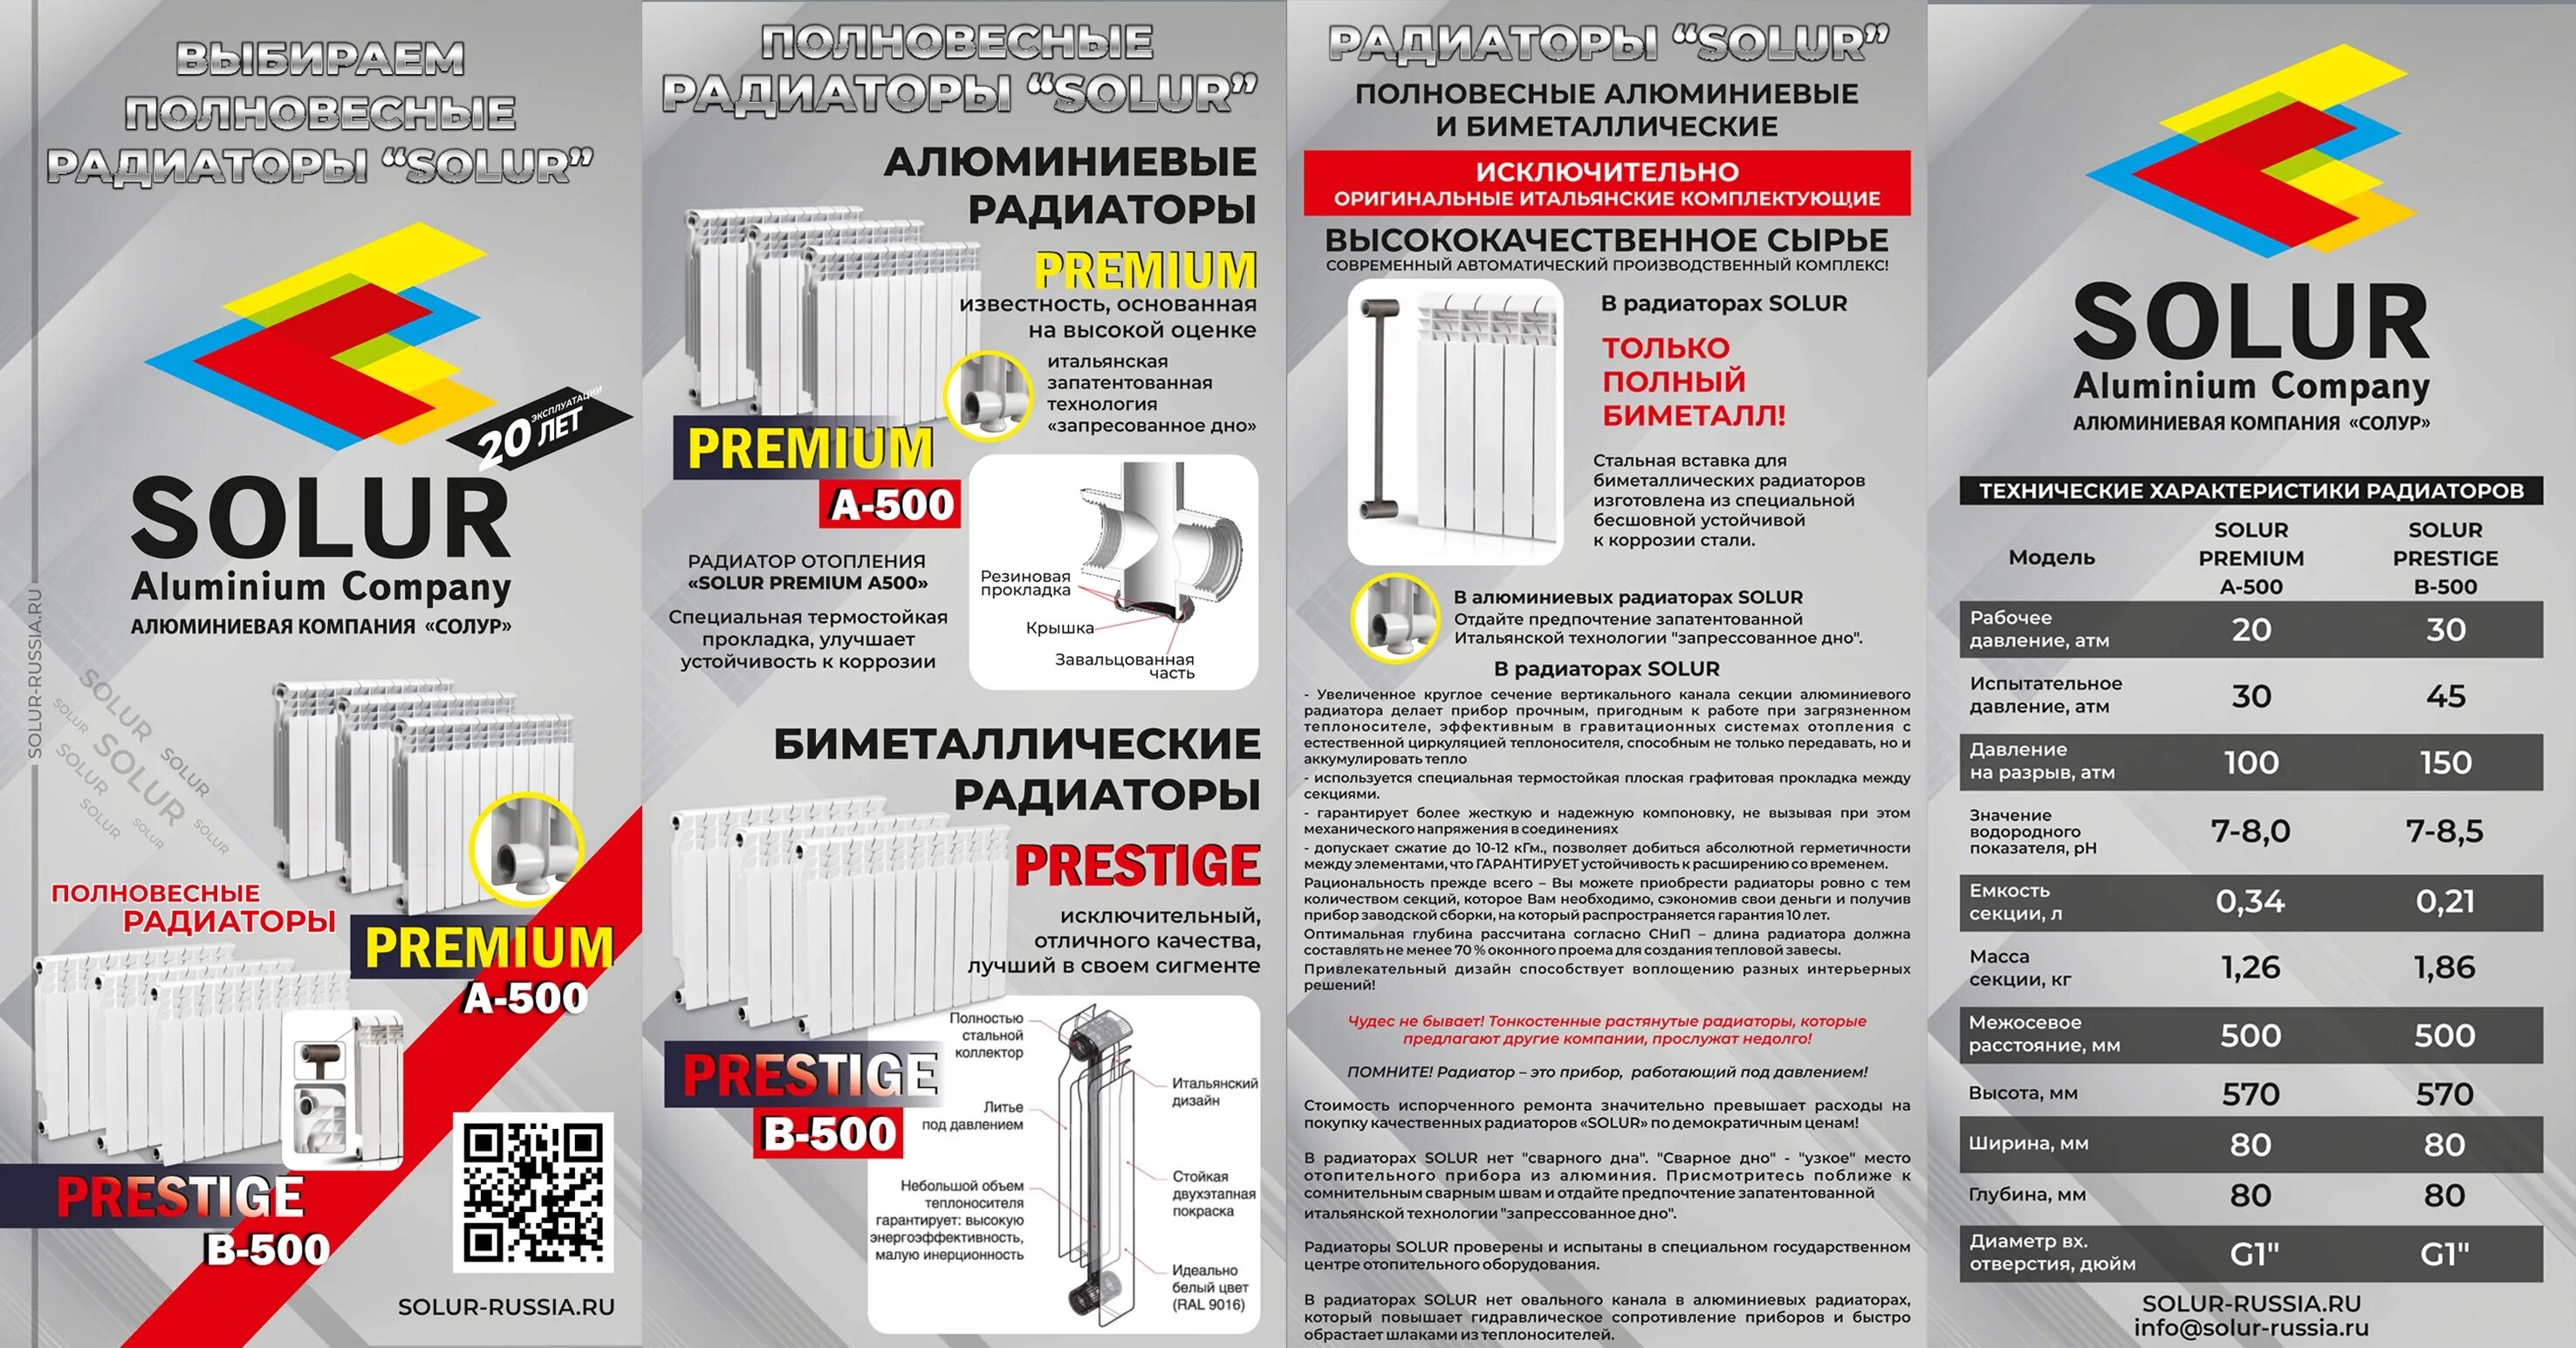 Радиатор биметаллический Solur Prestige b-500/80. Радиаторы Солур. Solur Premium радиатор. Радиаторы отопления фирмы производители. Рейтинг биметаллических радиаторов отопления